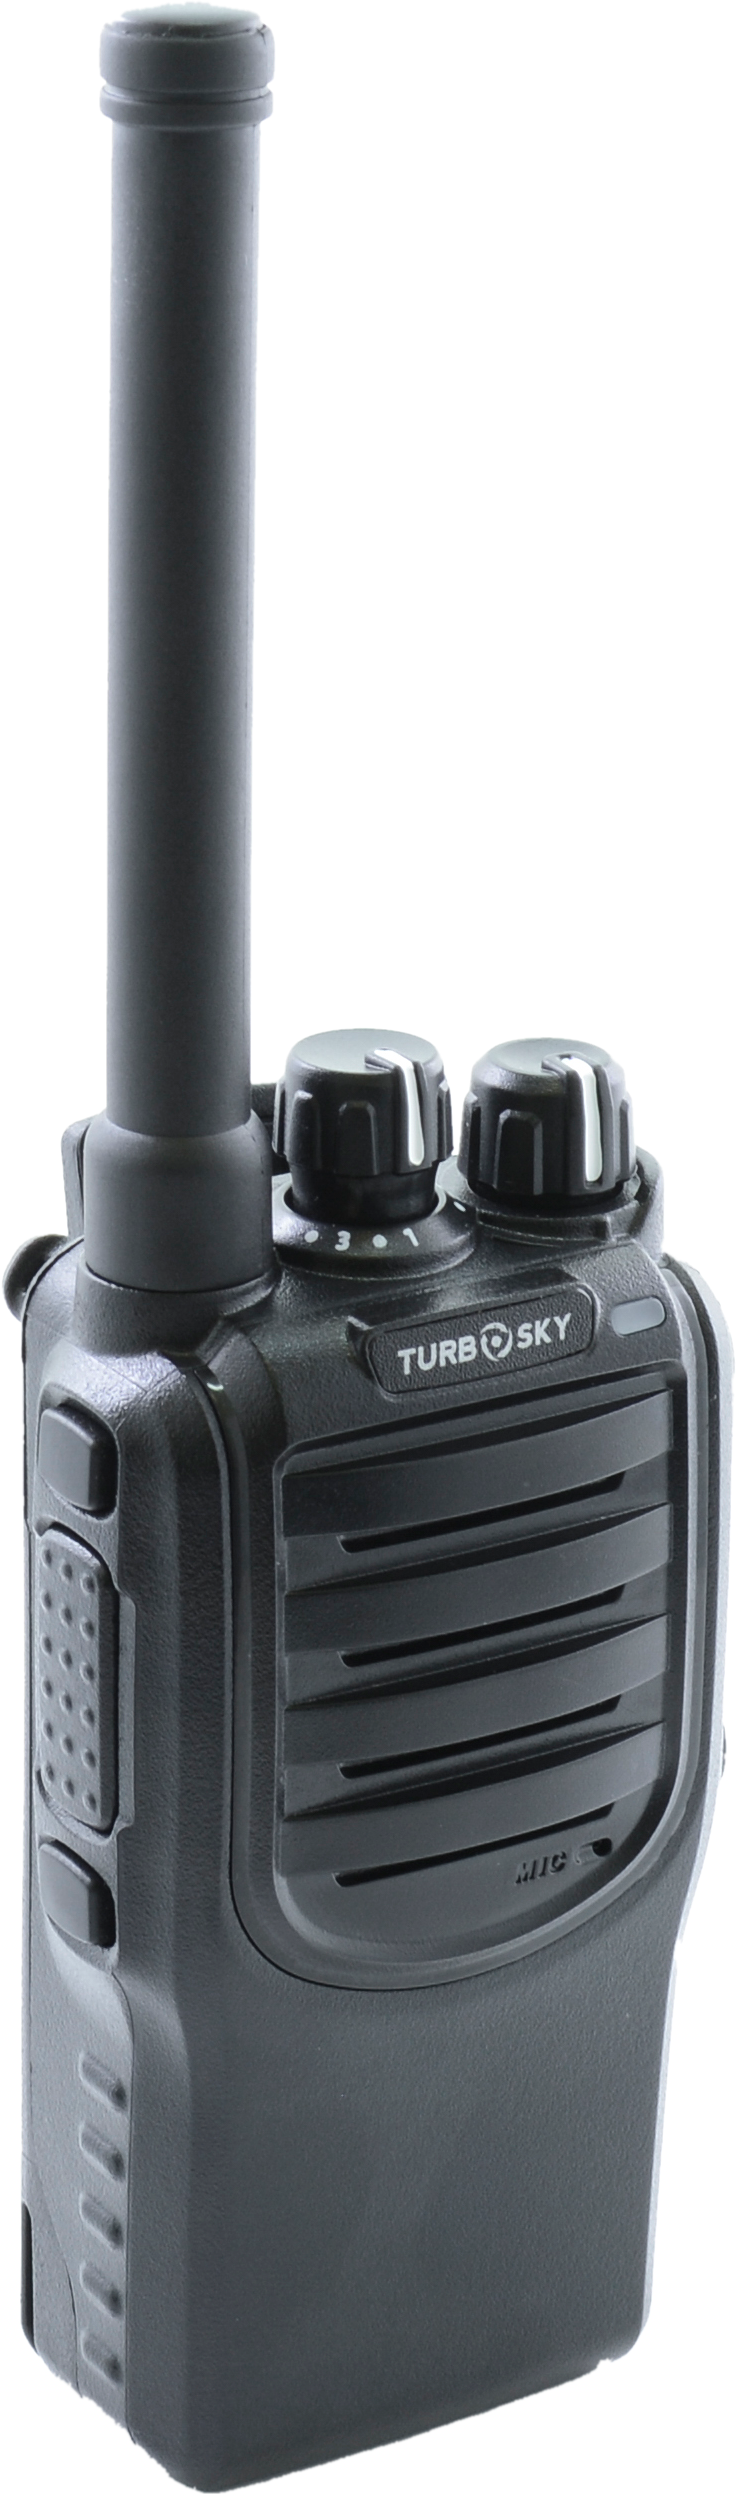 Портативная радиостанция TurboSky T4